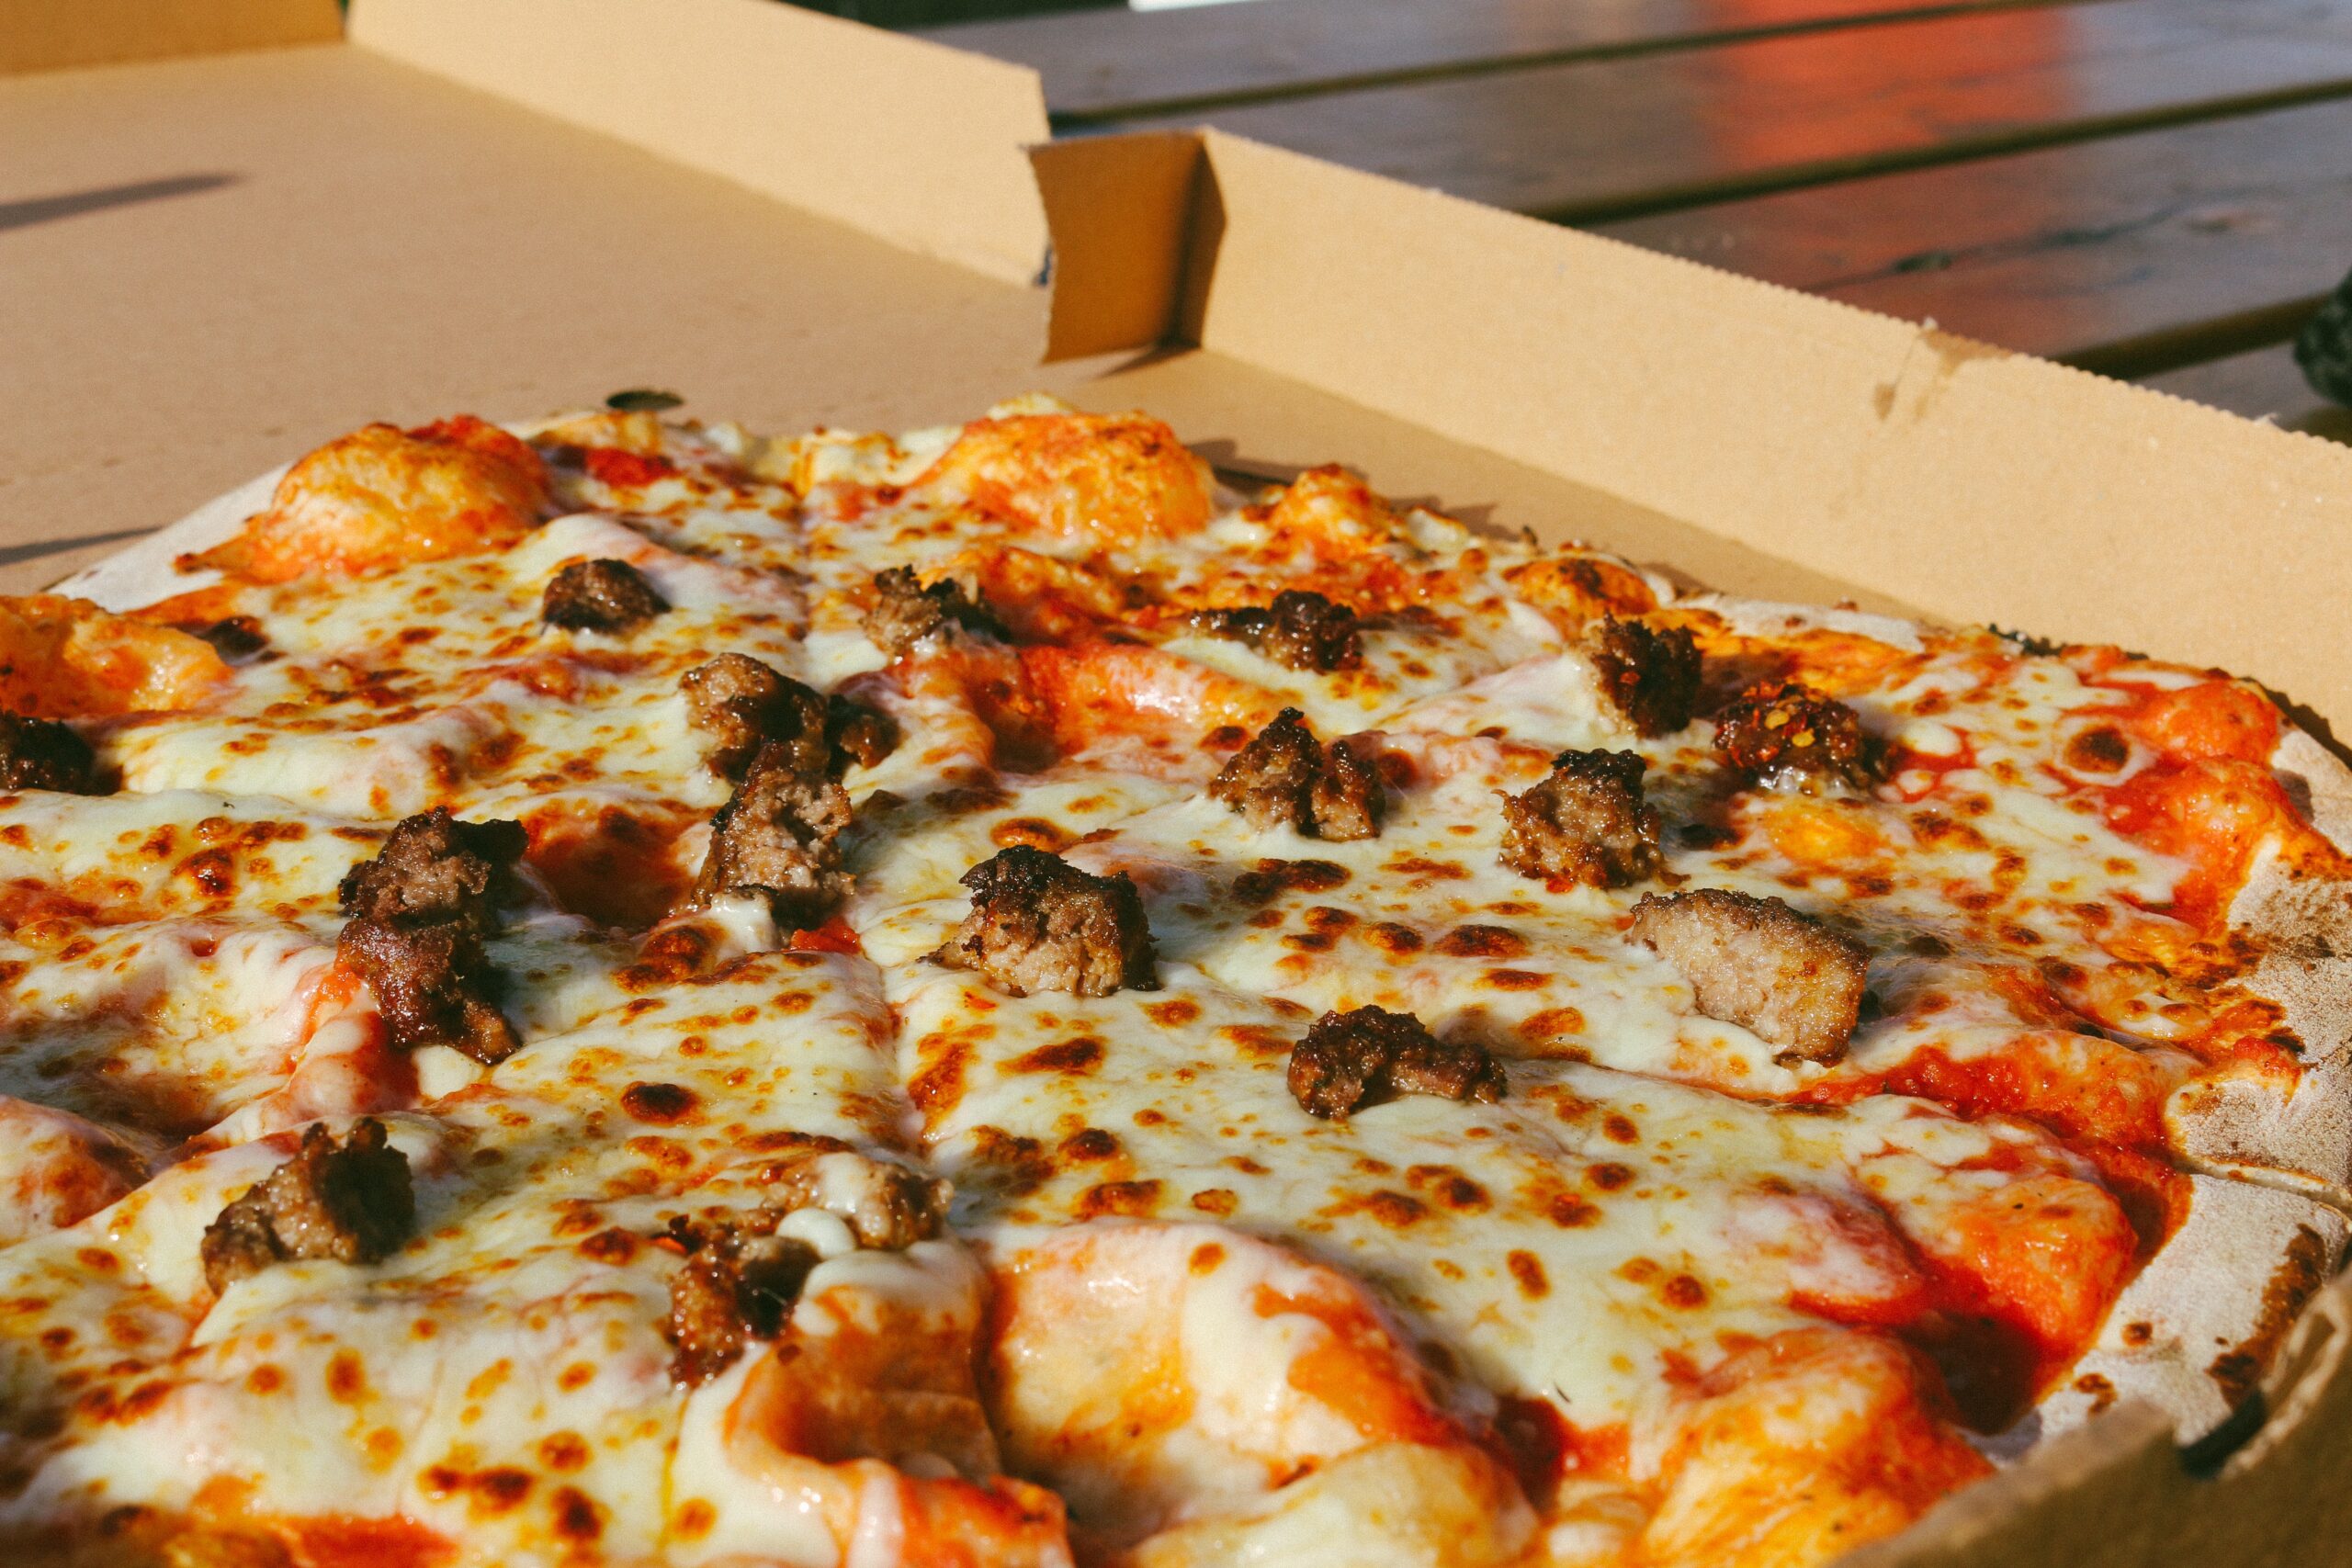 takeaway pizza in box.